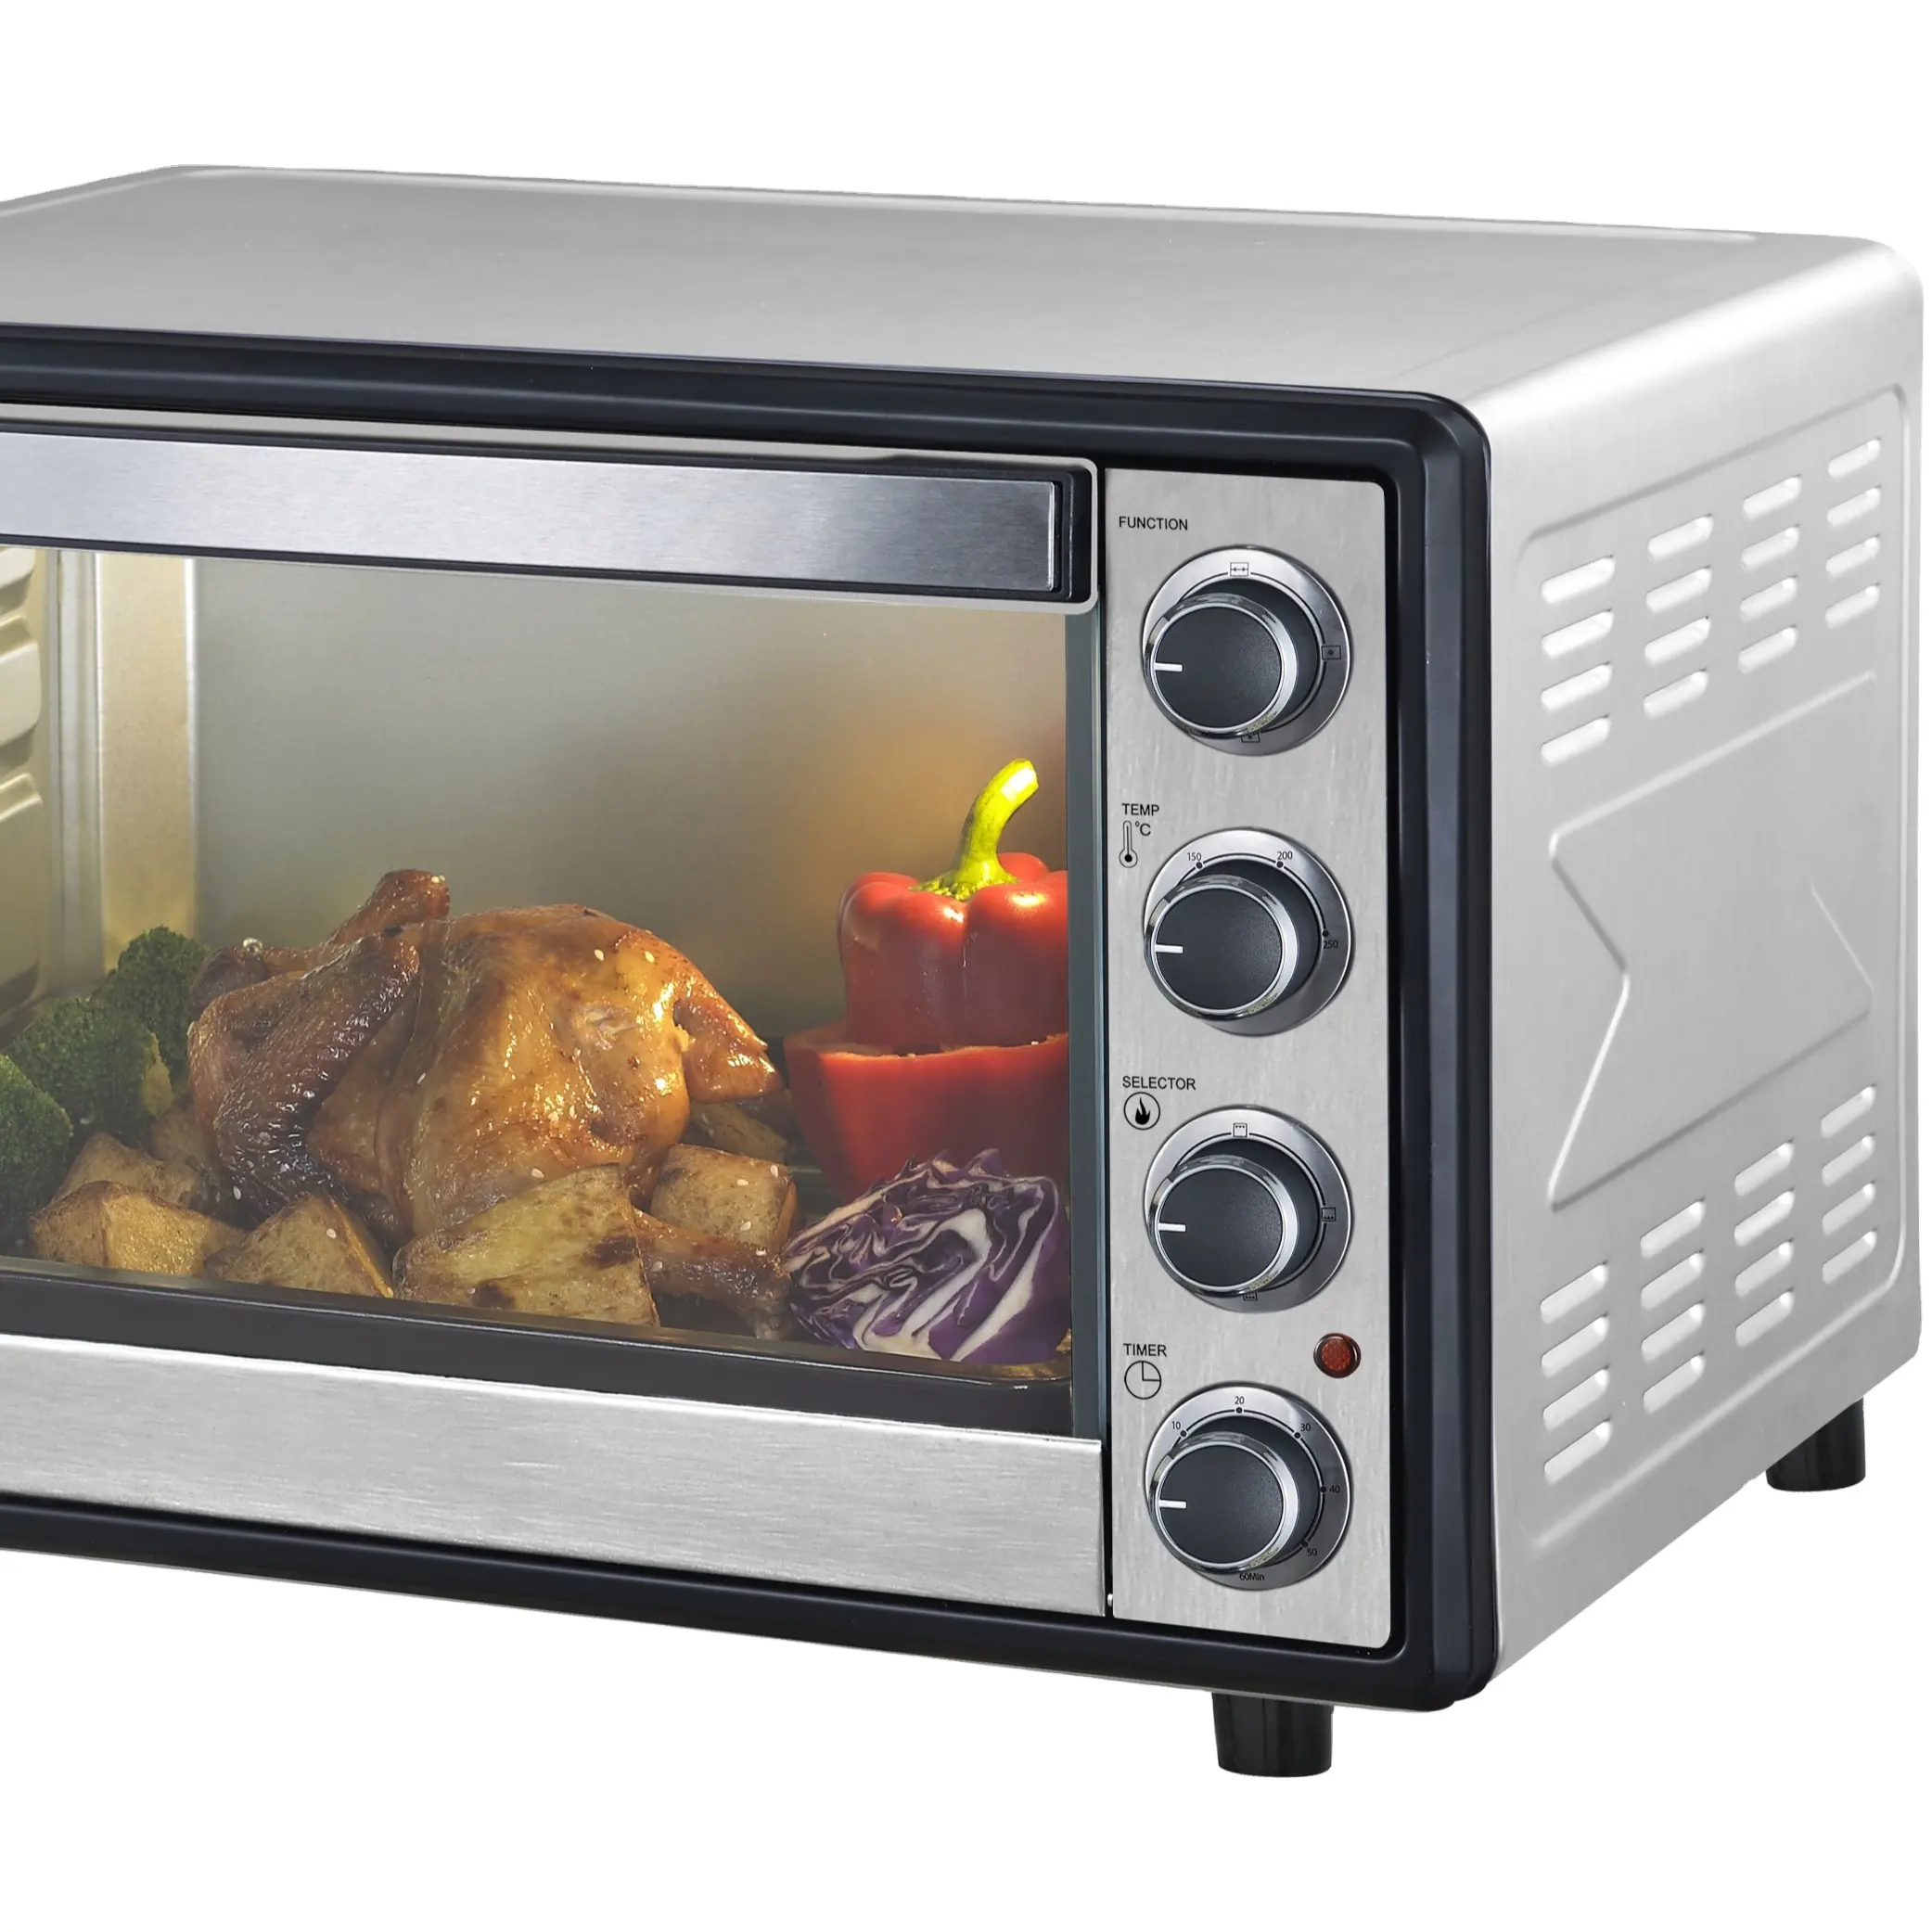 90cm tamaño mini cocina de doble pared eléctrica integrada en la estufa de microondas y hornos para el hogar